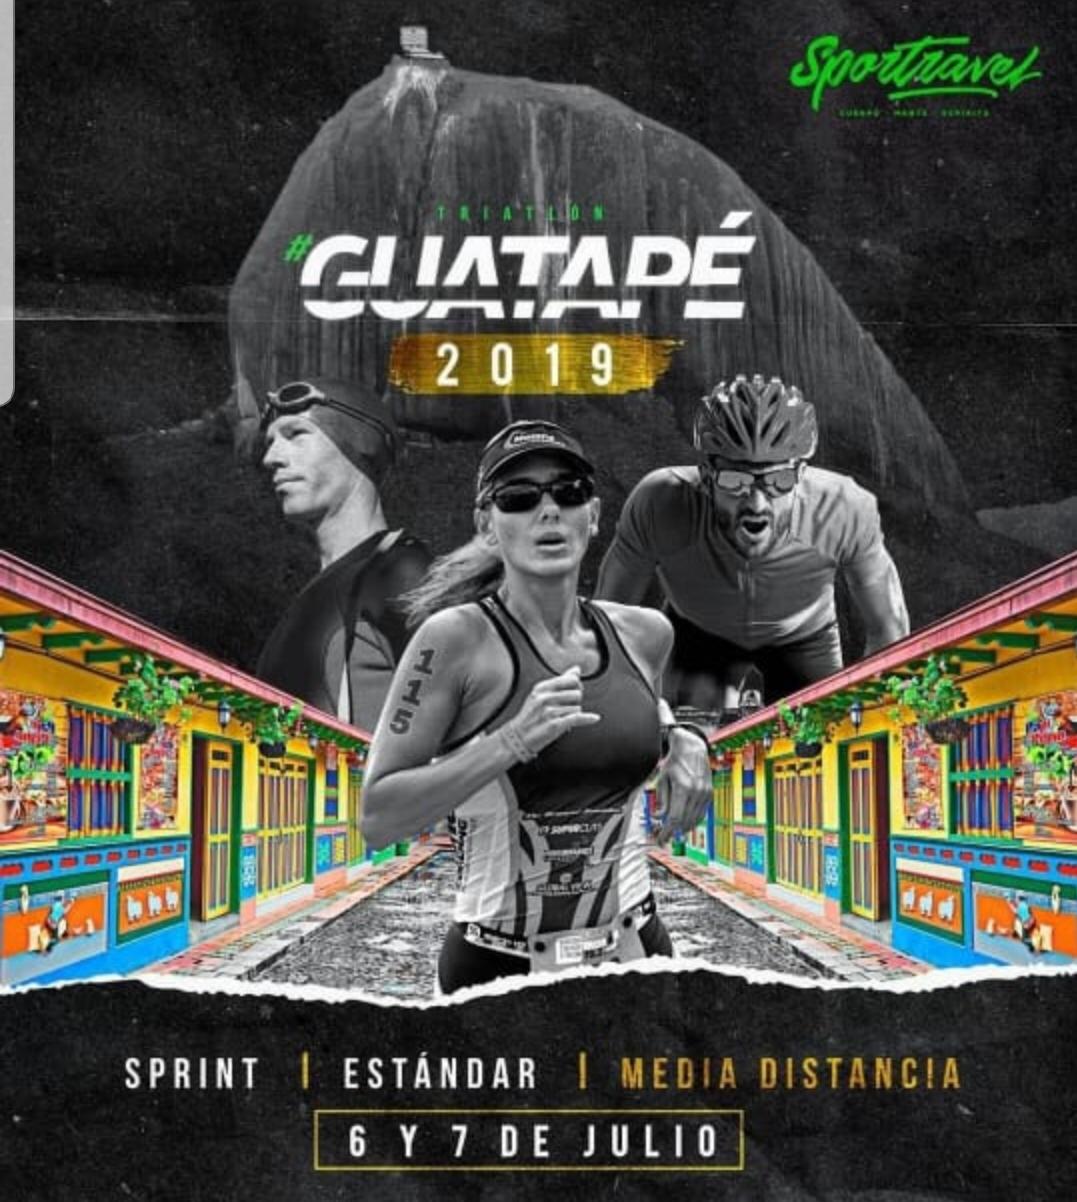 En Guatapé 6 y 7 de julio  “Triatlón Guatapé 2019”